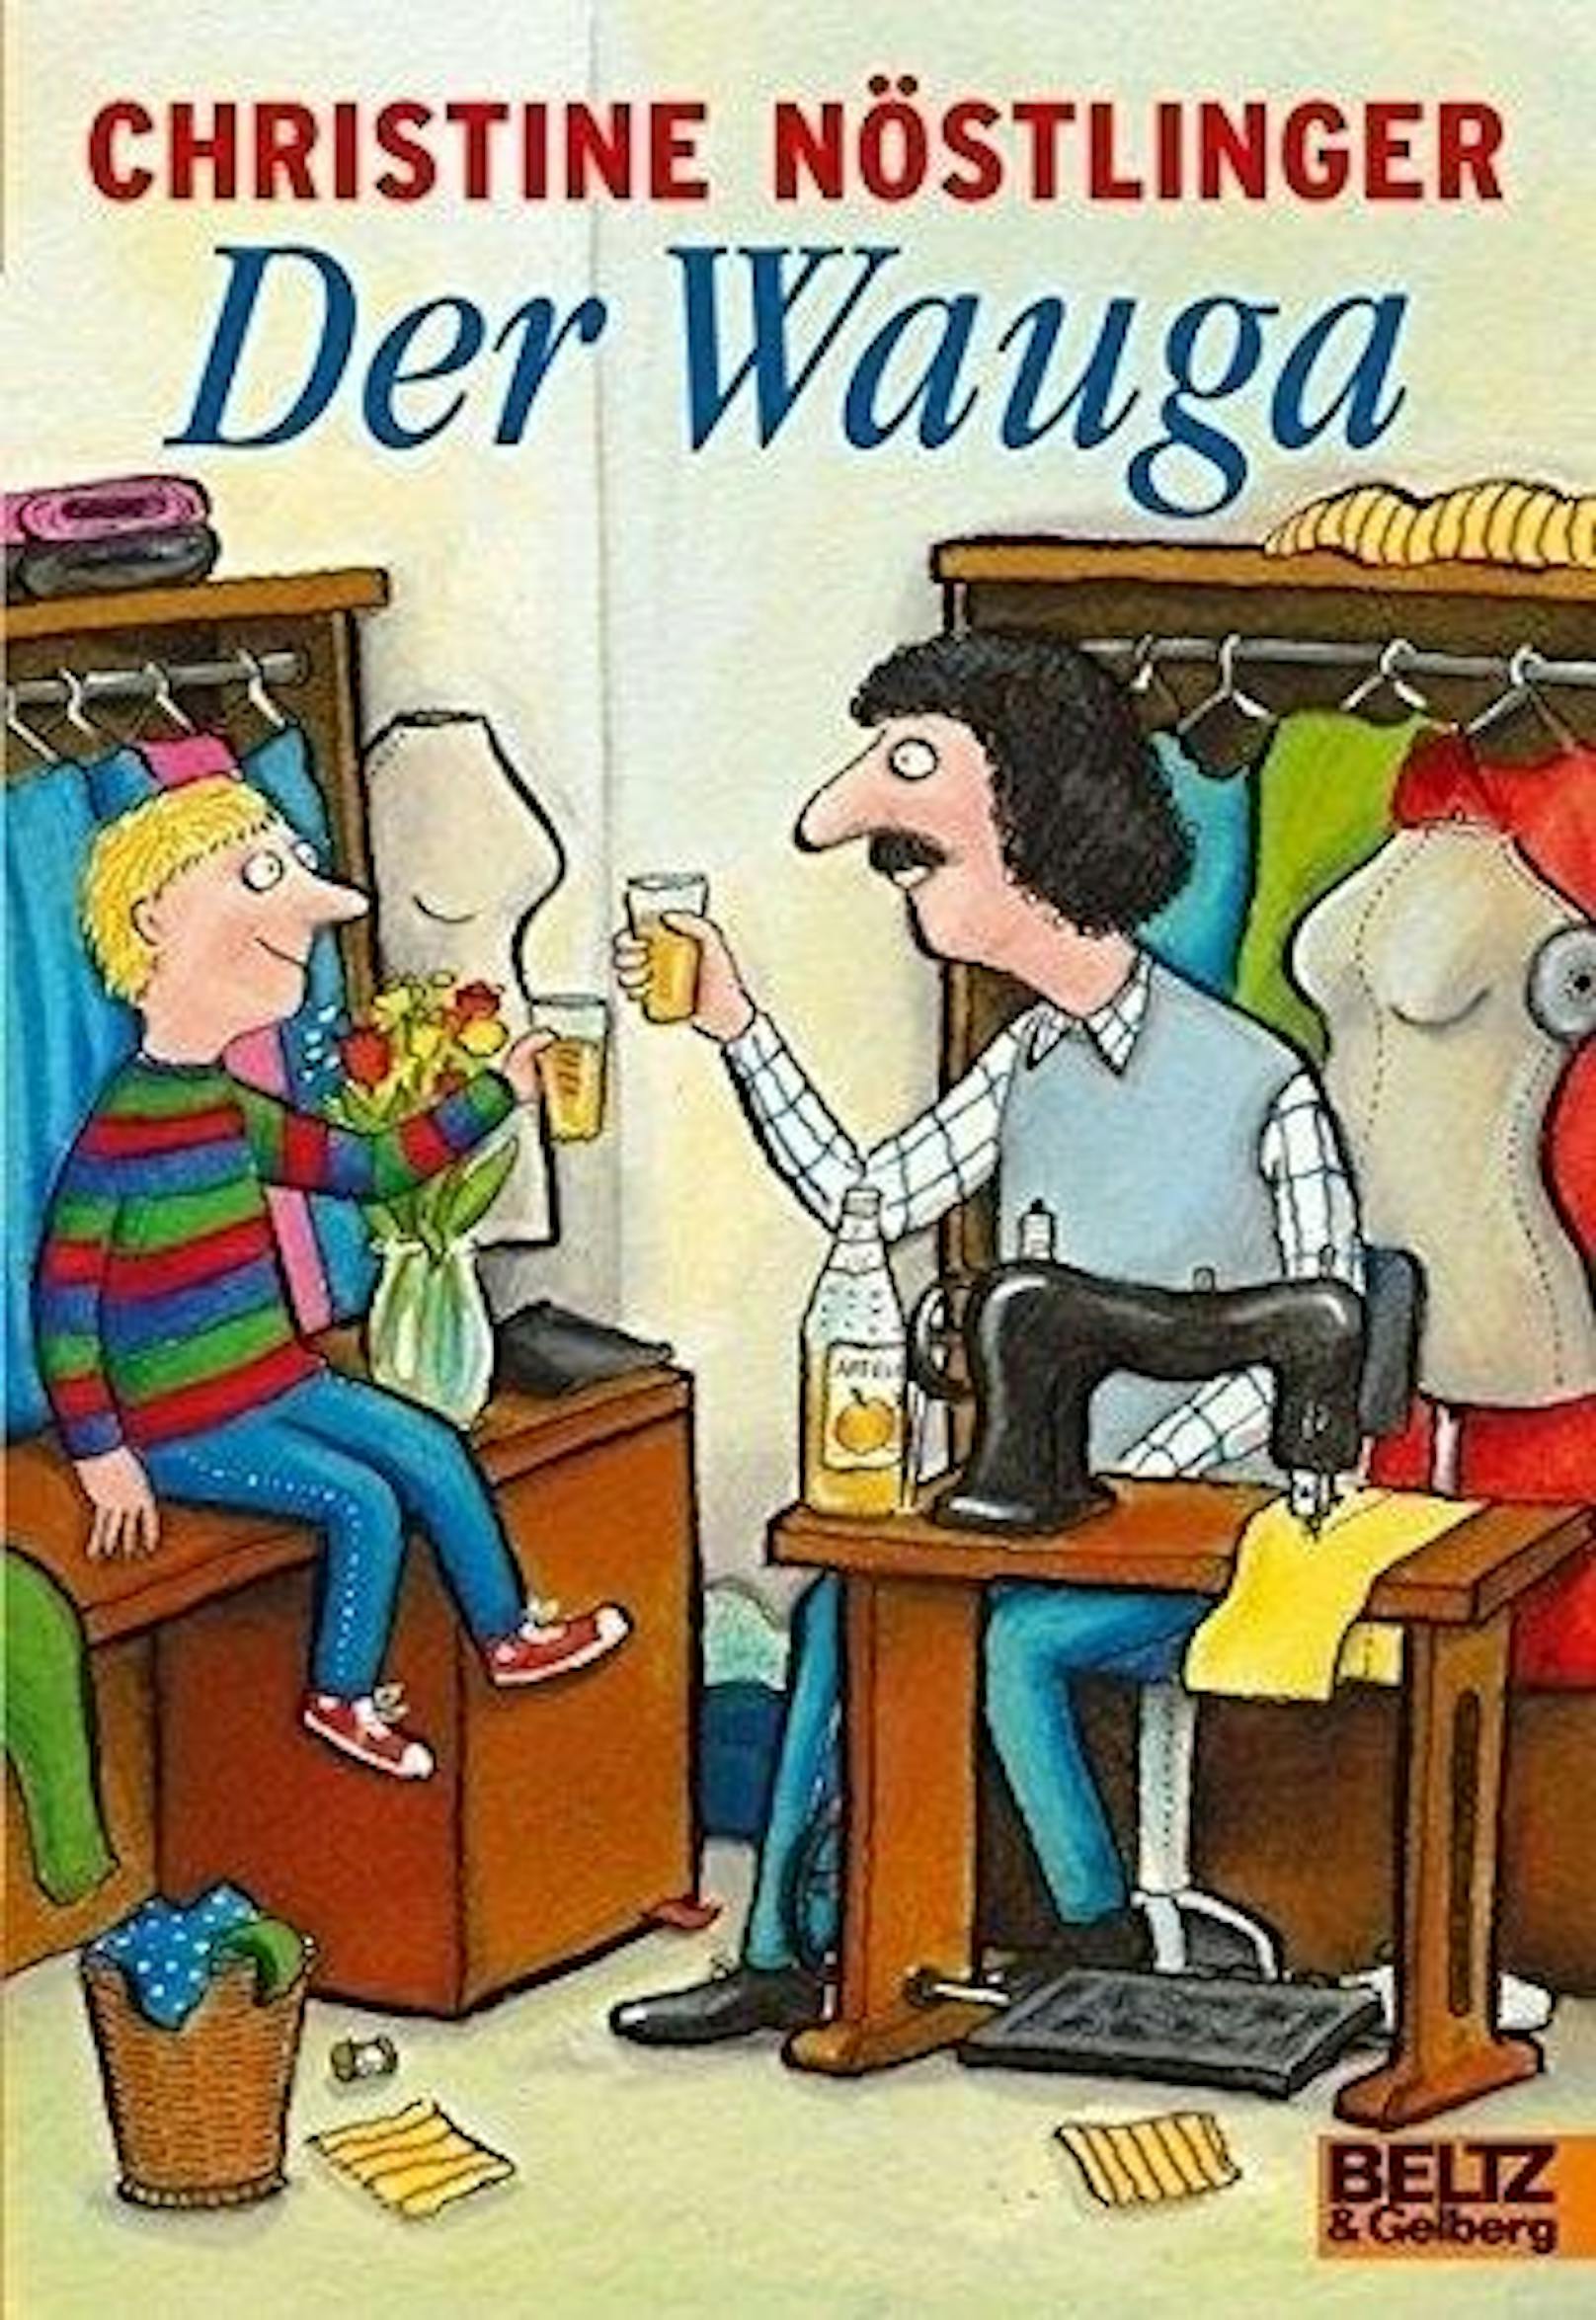 Der Wauga, 1985